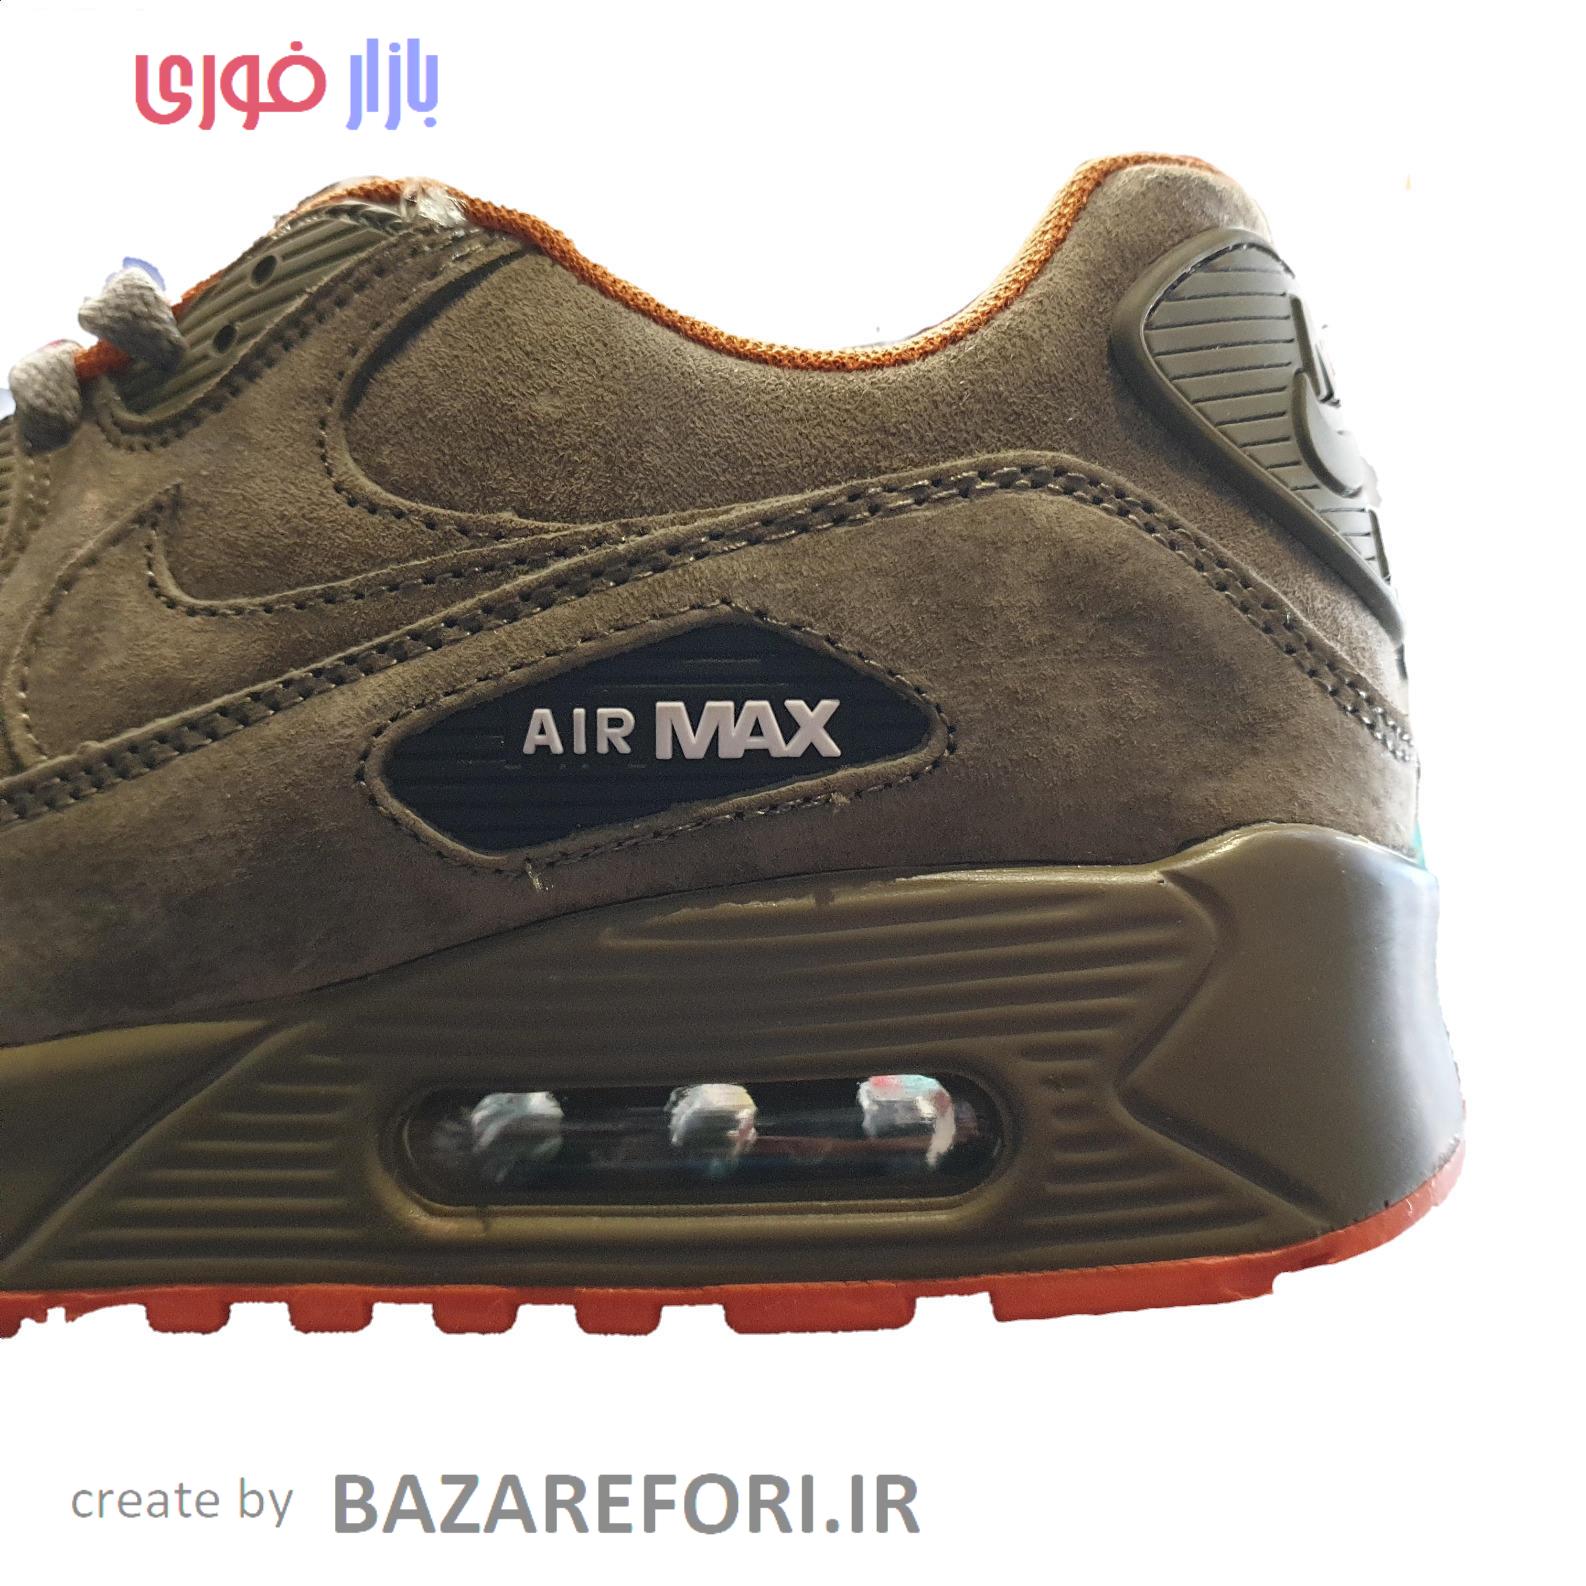 کفش پیاده روی مدل Air max